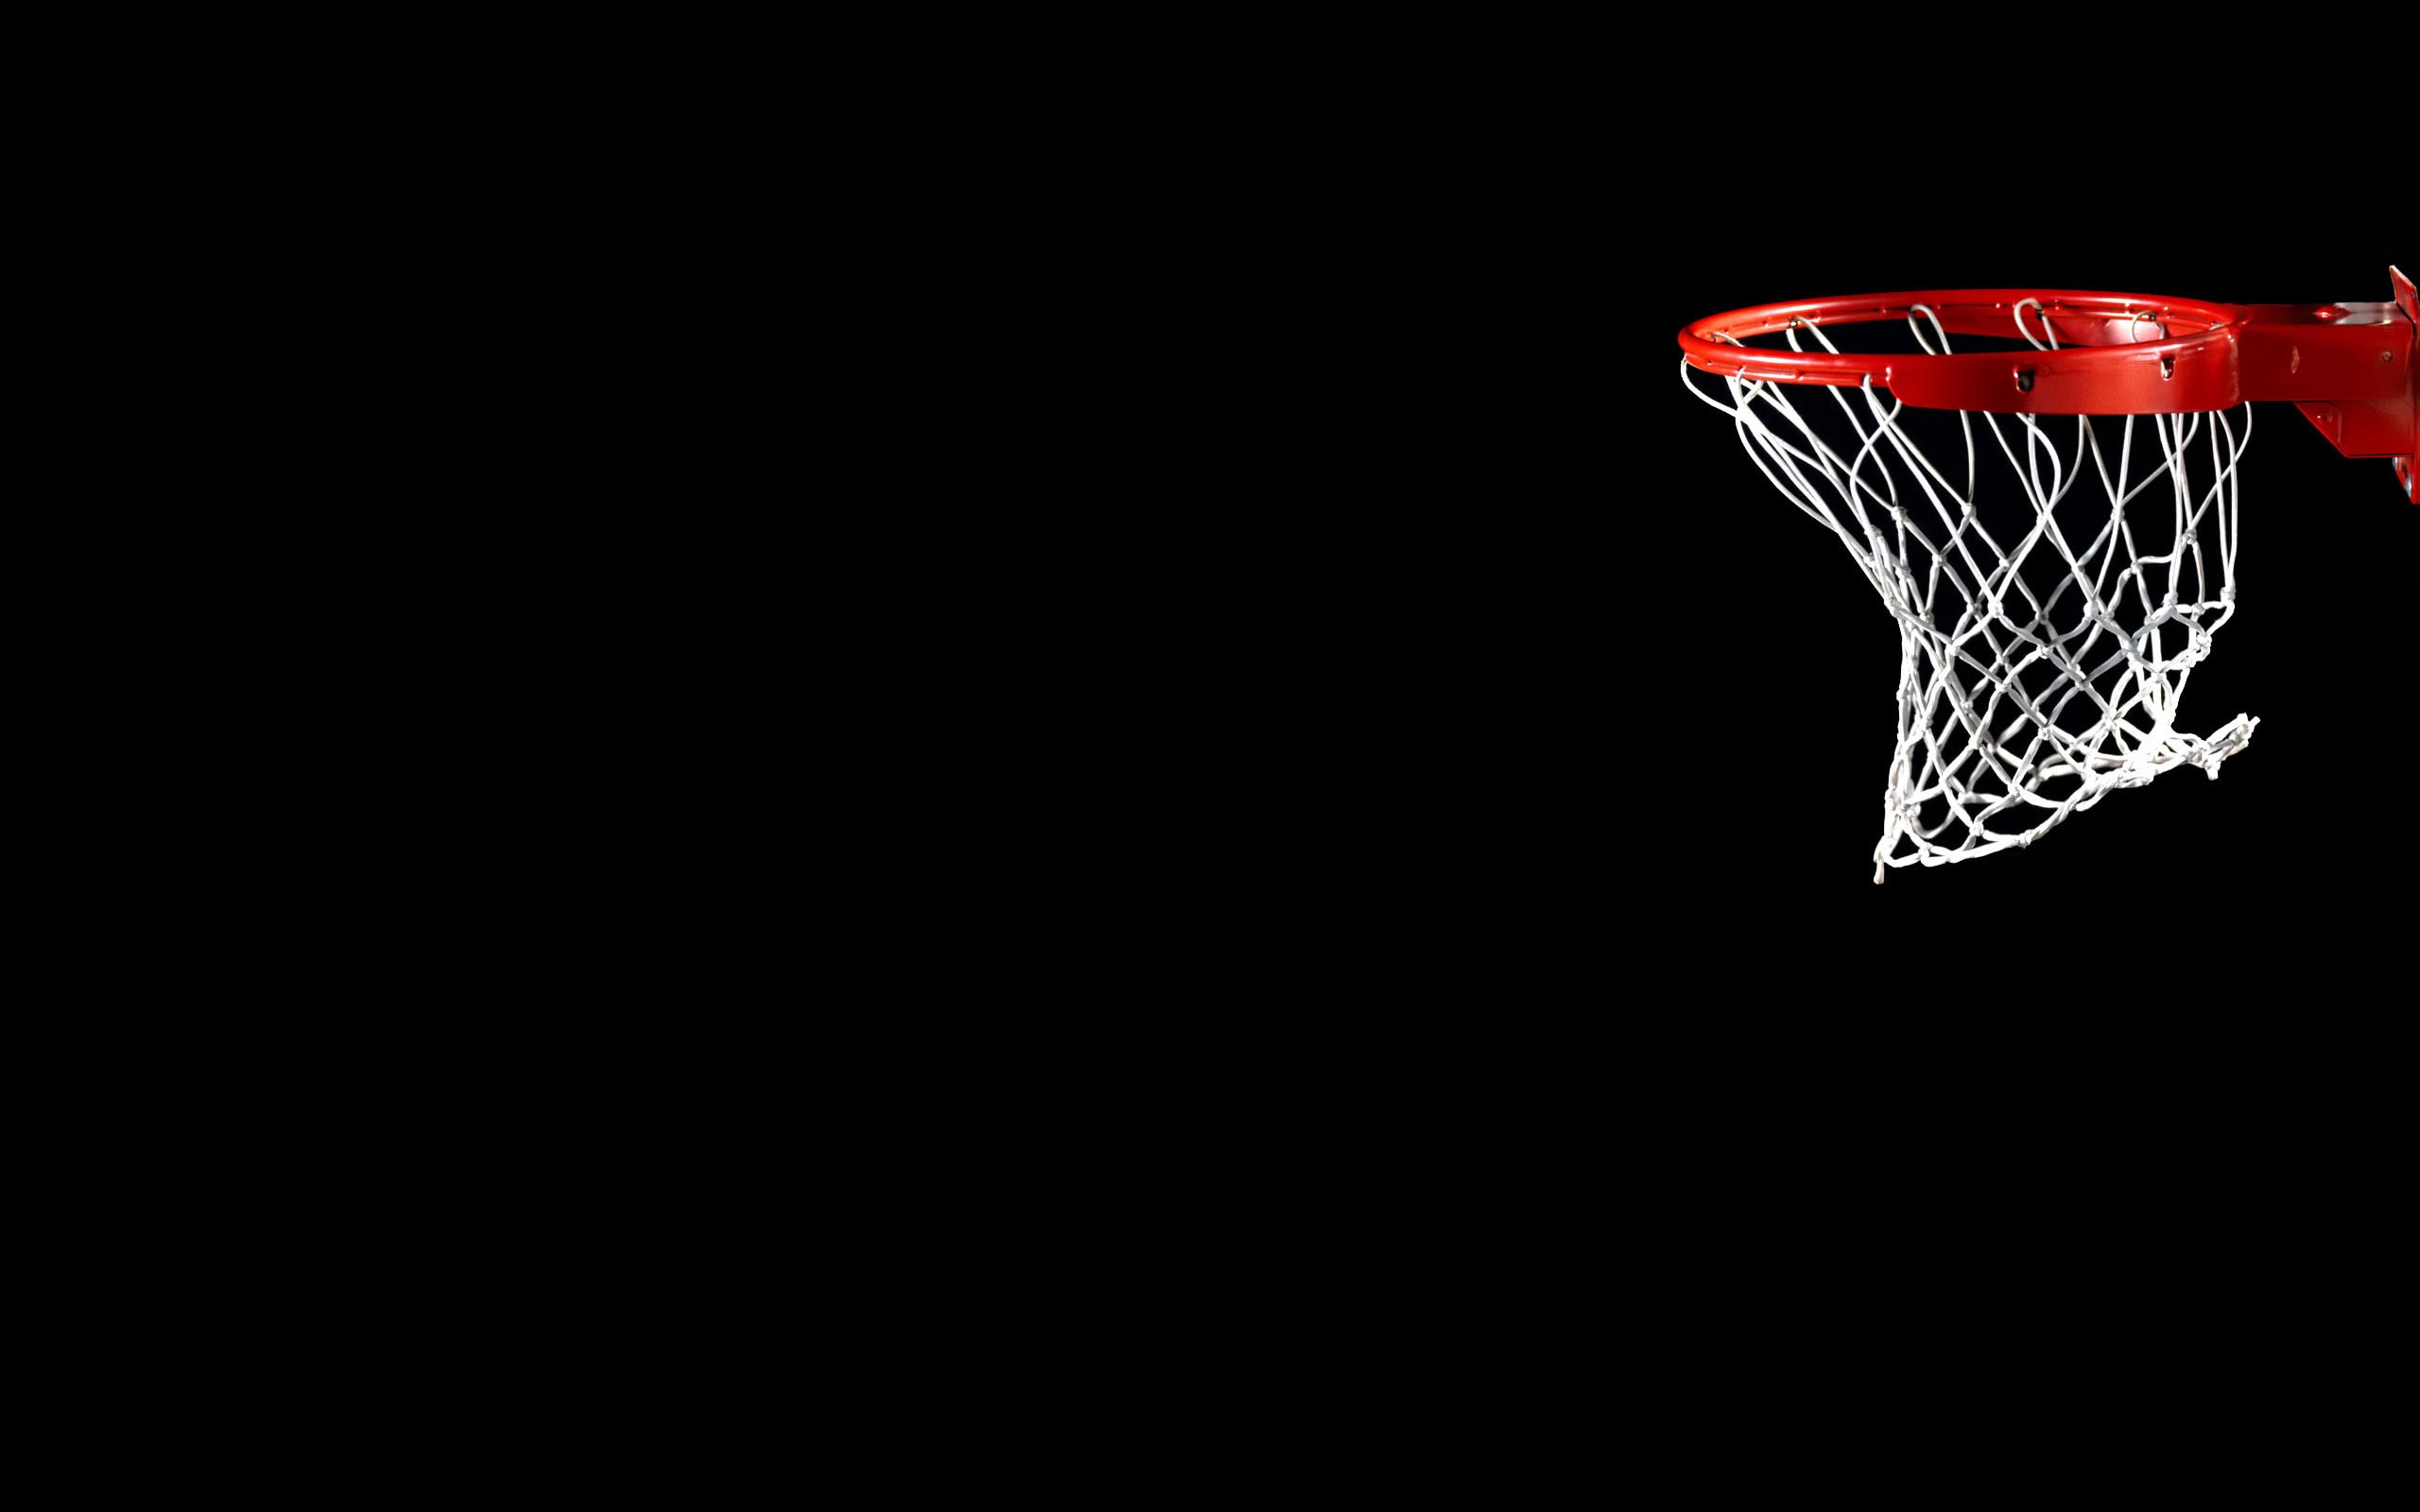 Download Basketball Hoop Wallpaper 8922 2560x1600 px High ...